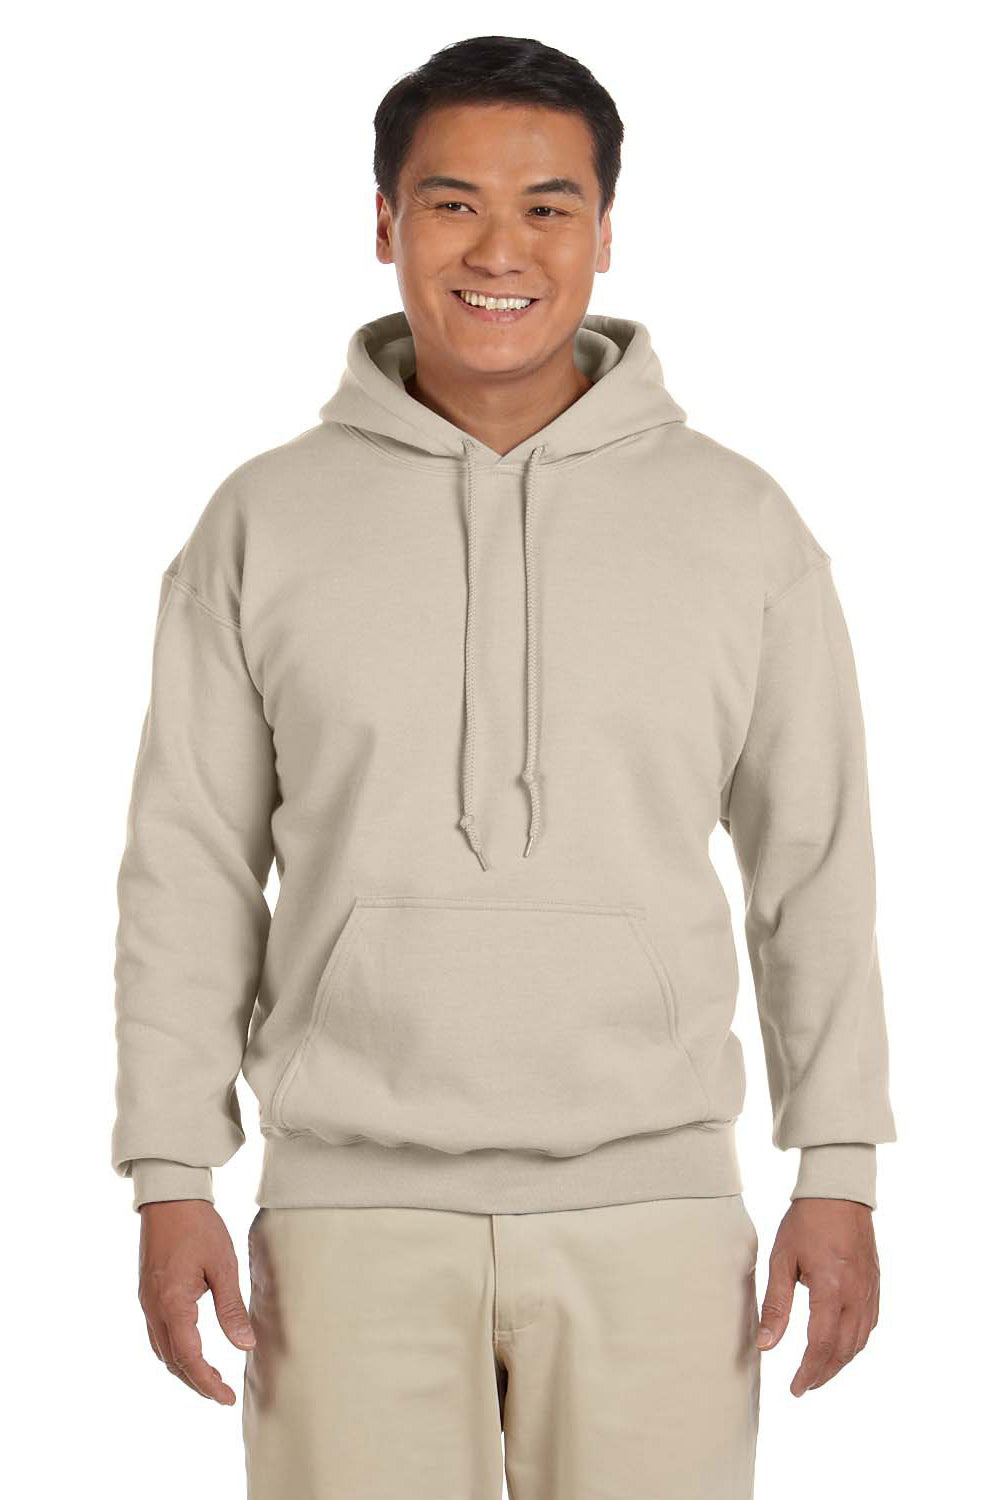 Gildan G185 Mens Hooded Sweatshirt Hoodie Sand Brown Front